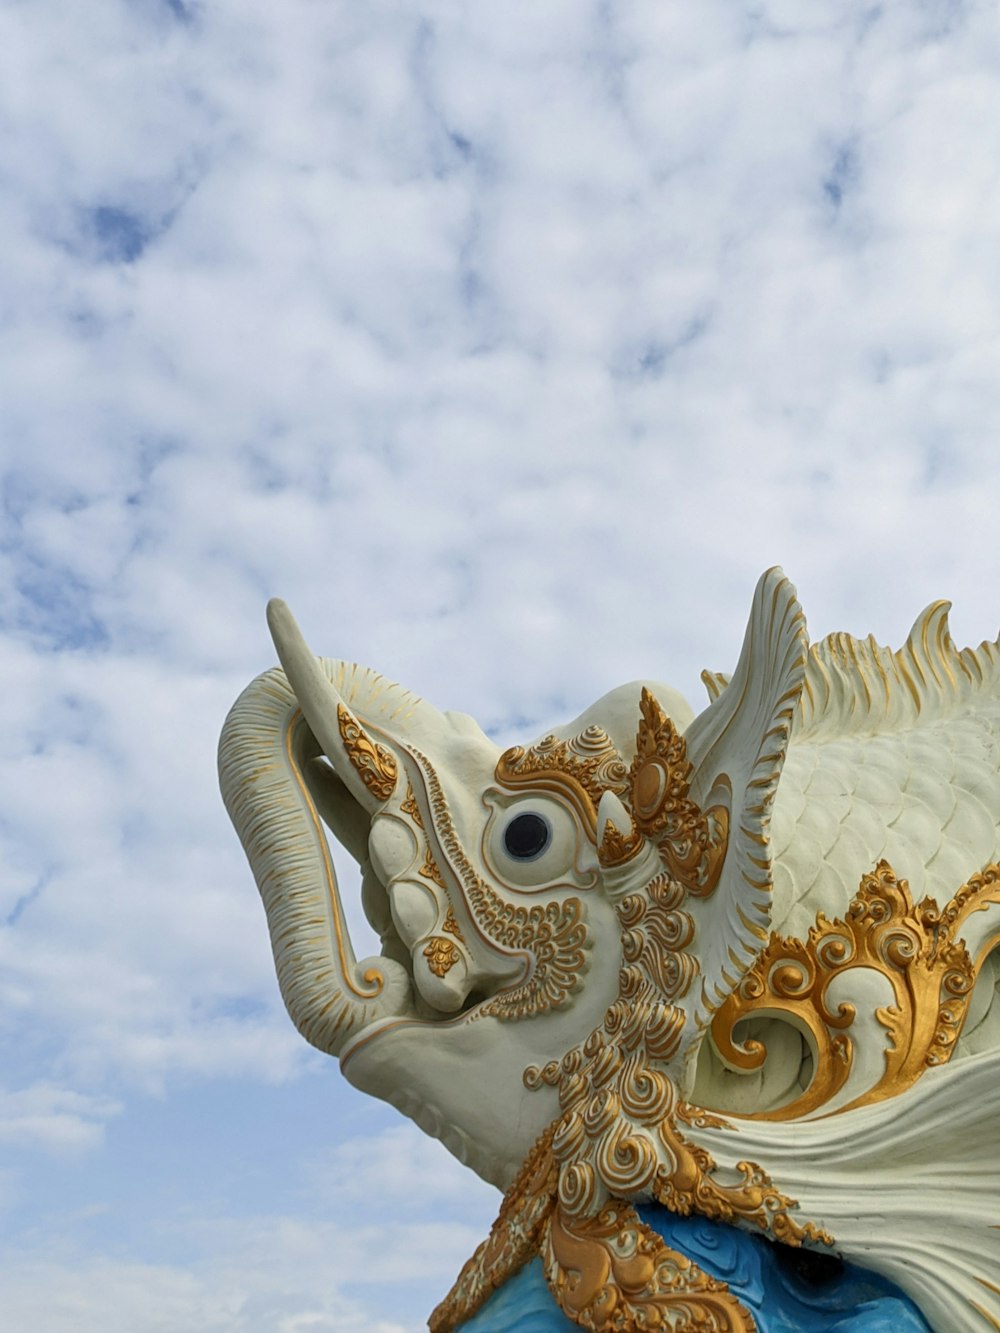 a sculpture of a dragon